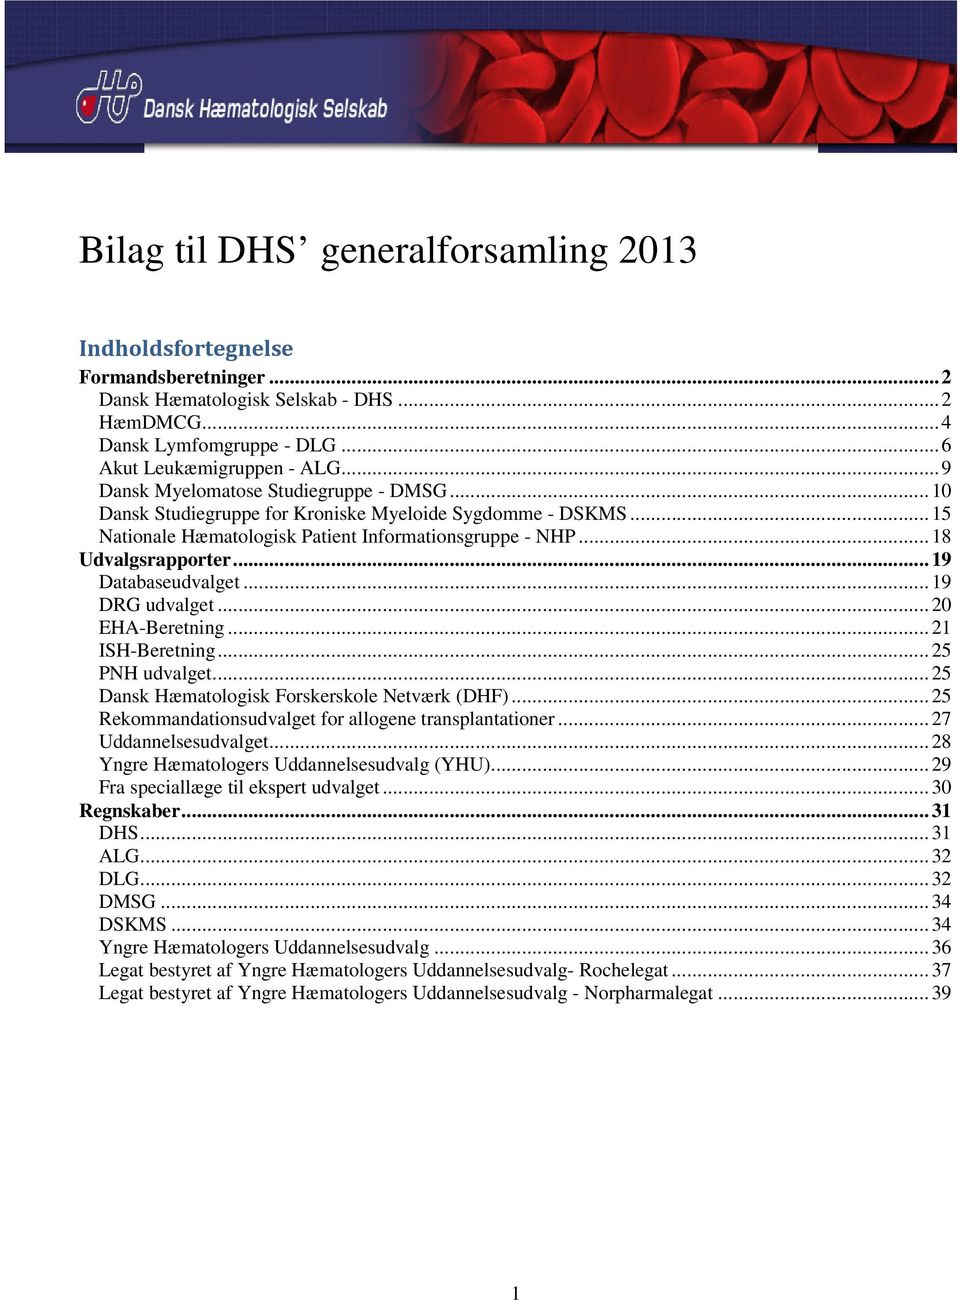 .. 19 Databaseudvalget... 19 DRG udvalget... 20 EHA-Beretning... 21 ISH-Beretning... 25 PNH udvalget... 25 Dansk Hæmatologisk Forskerskole Netværk (DHF).